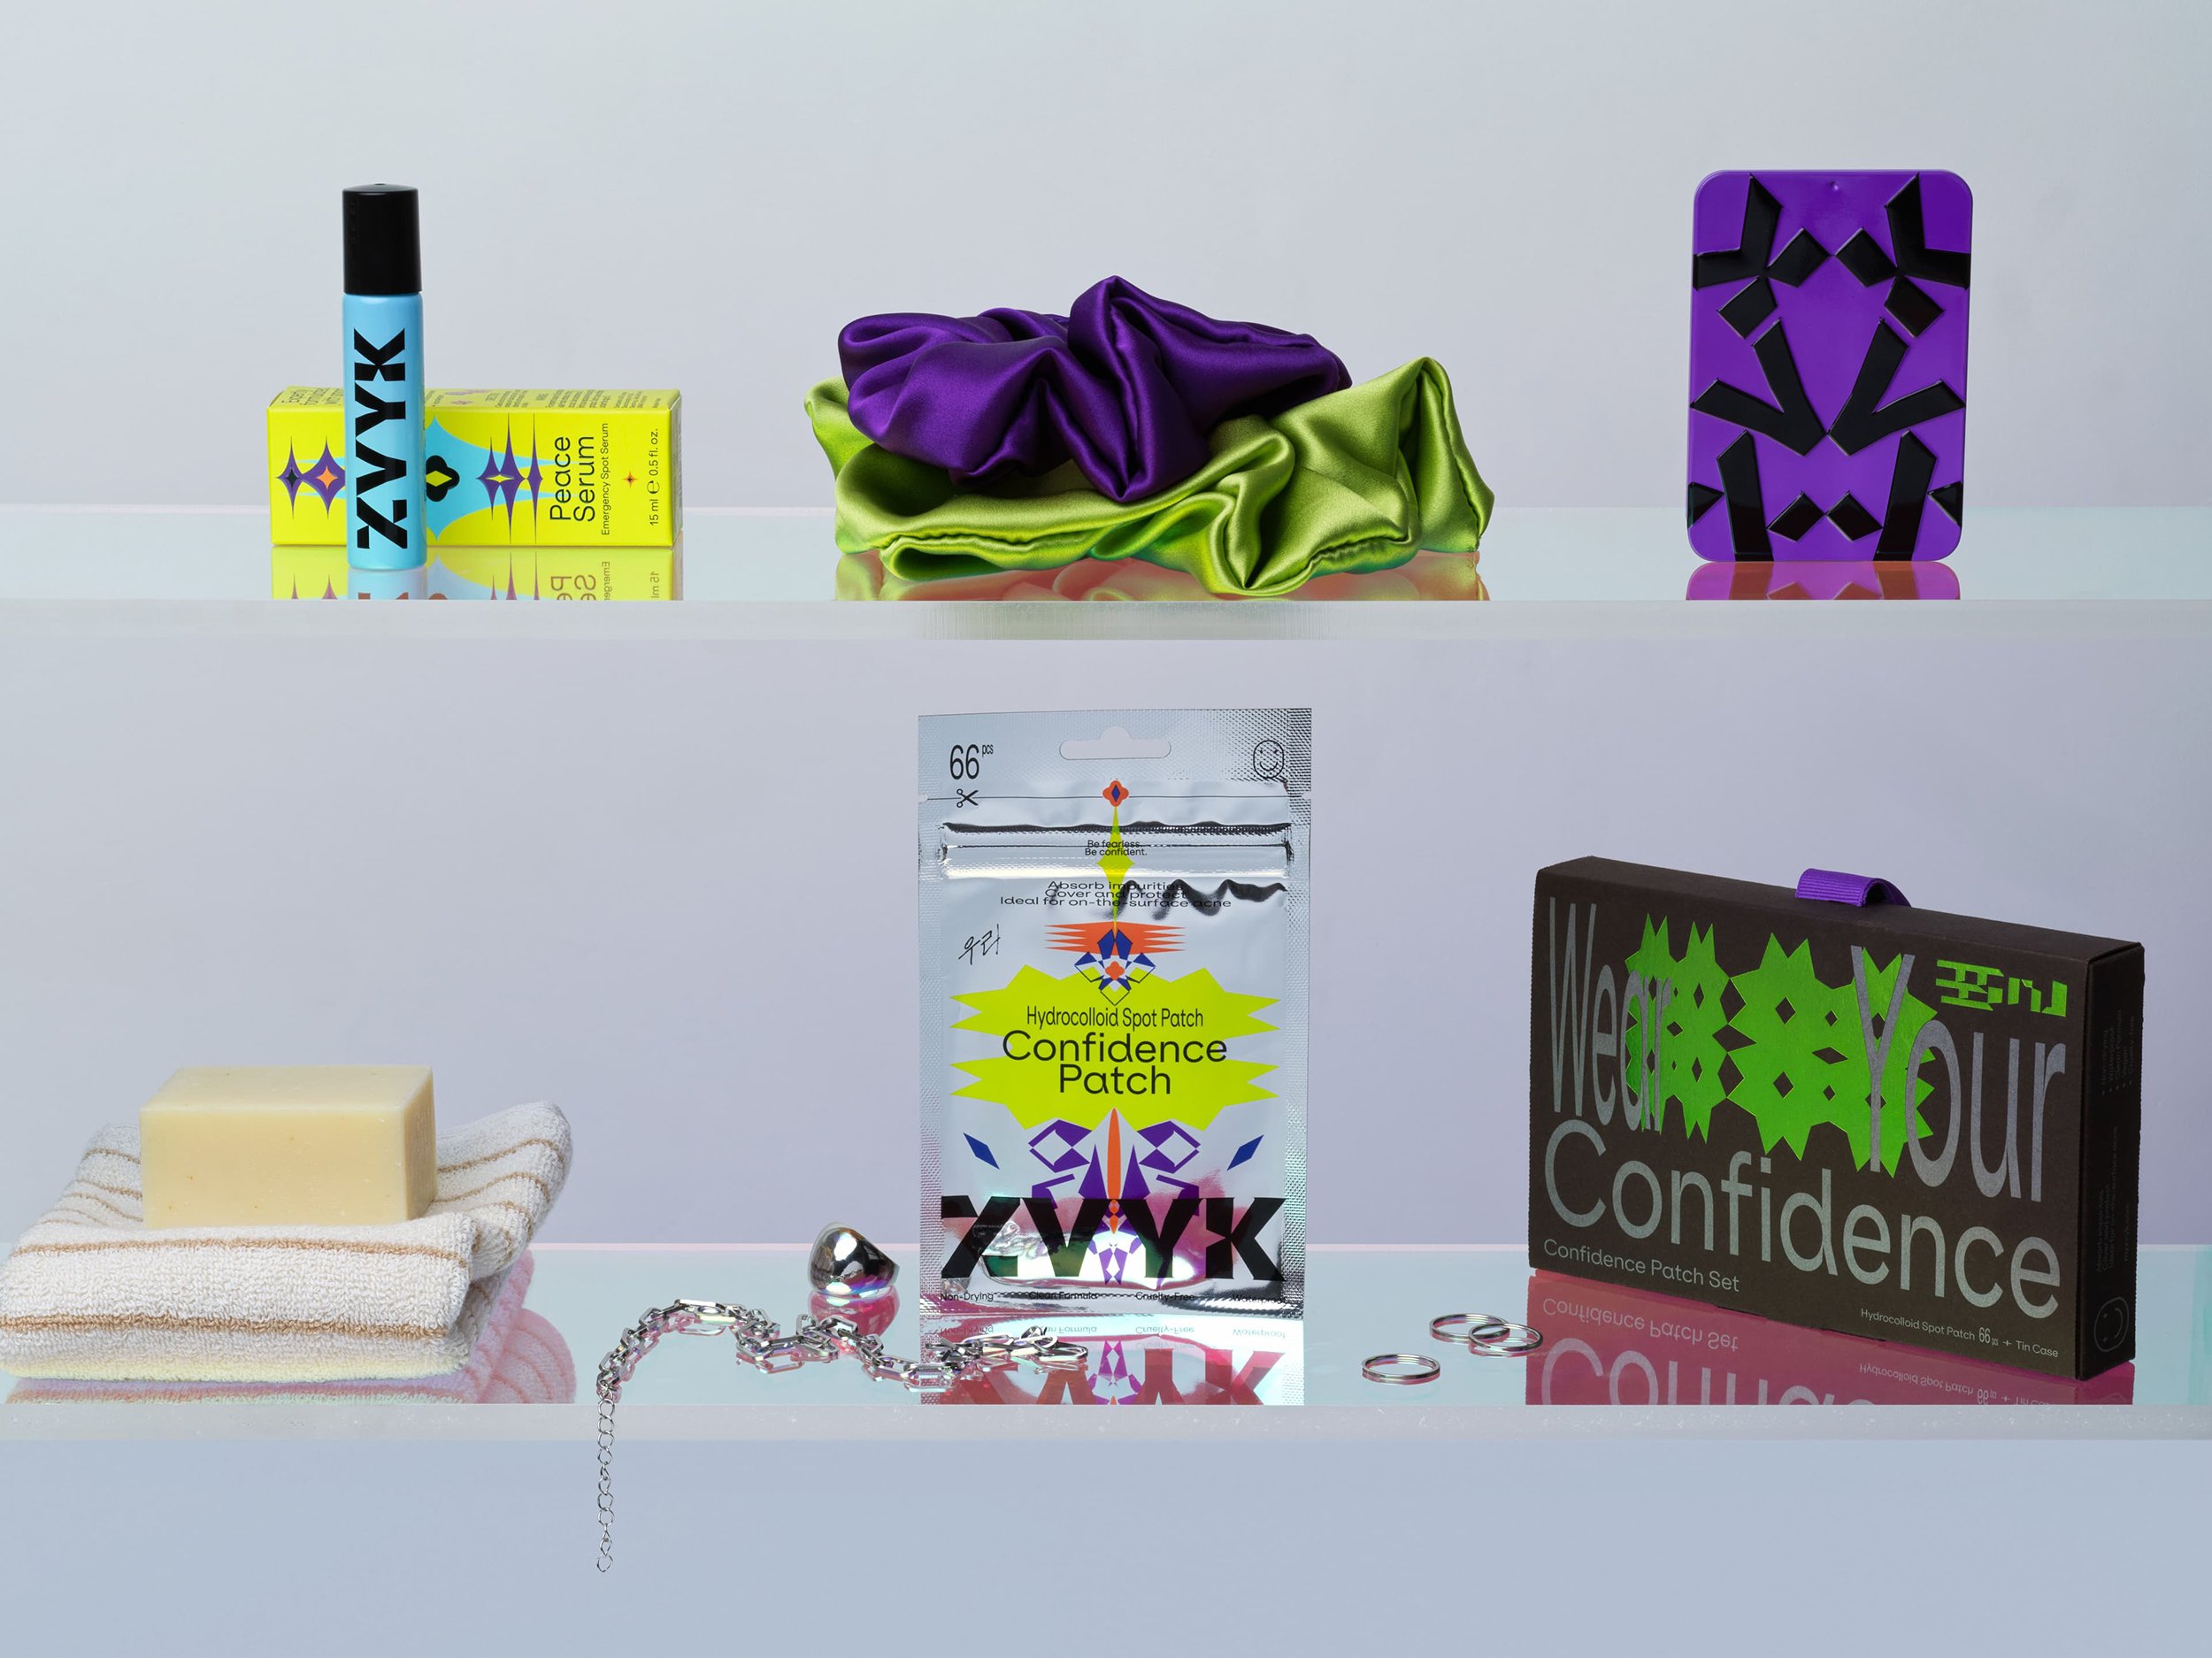 New brand identity and packaging design by Hong Kong-based Oddity Studio for skin care brand ZVYK